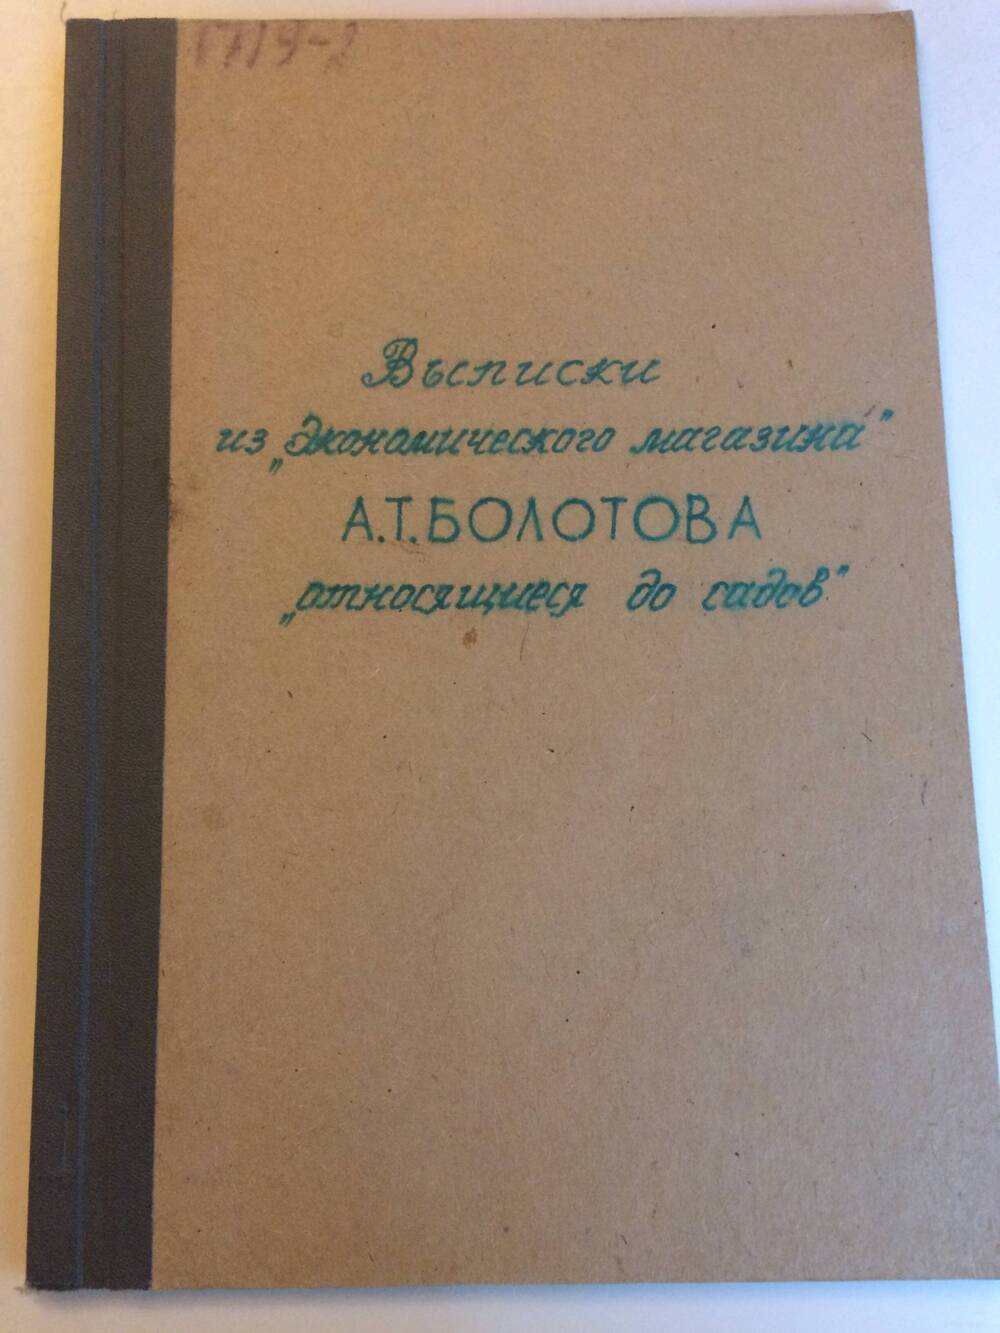 Рукопись: Выписки из Экономического магазина А.Т. Болотова относящиеся до садов